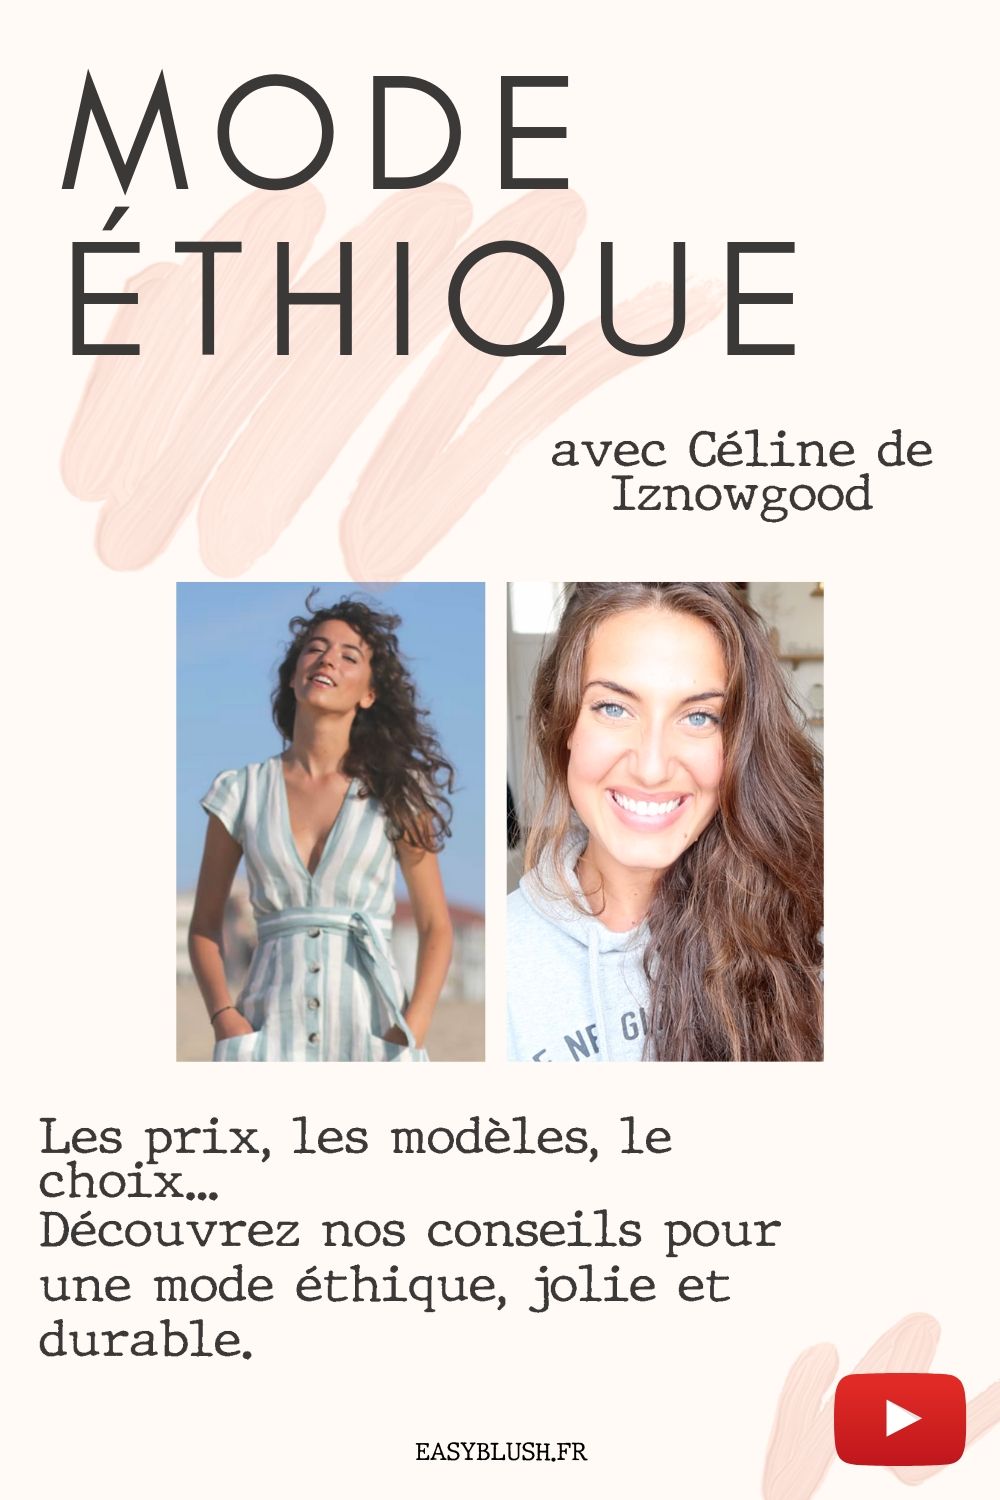 La mode éthique...vaste sujet ! Prix, fabrication, choix des modèles : découvrez les dessous de cette industrie et les conseils de Céline (spécialiste du sujet) pour une mode éthique, jolie et durable.